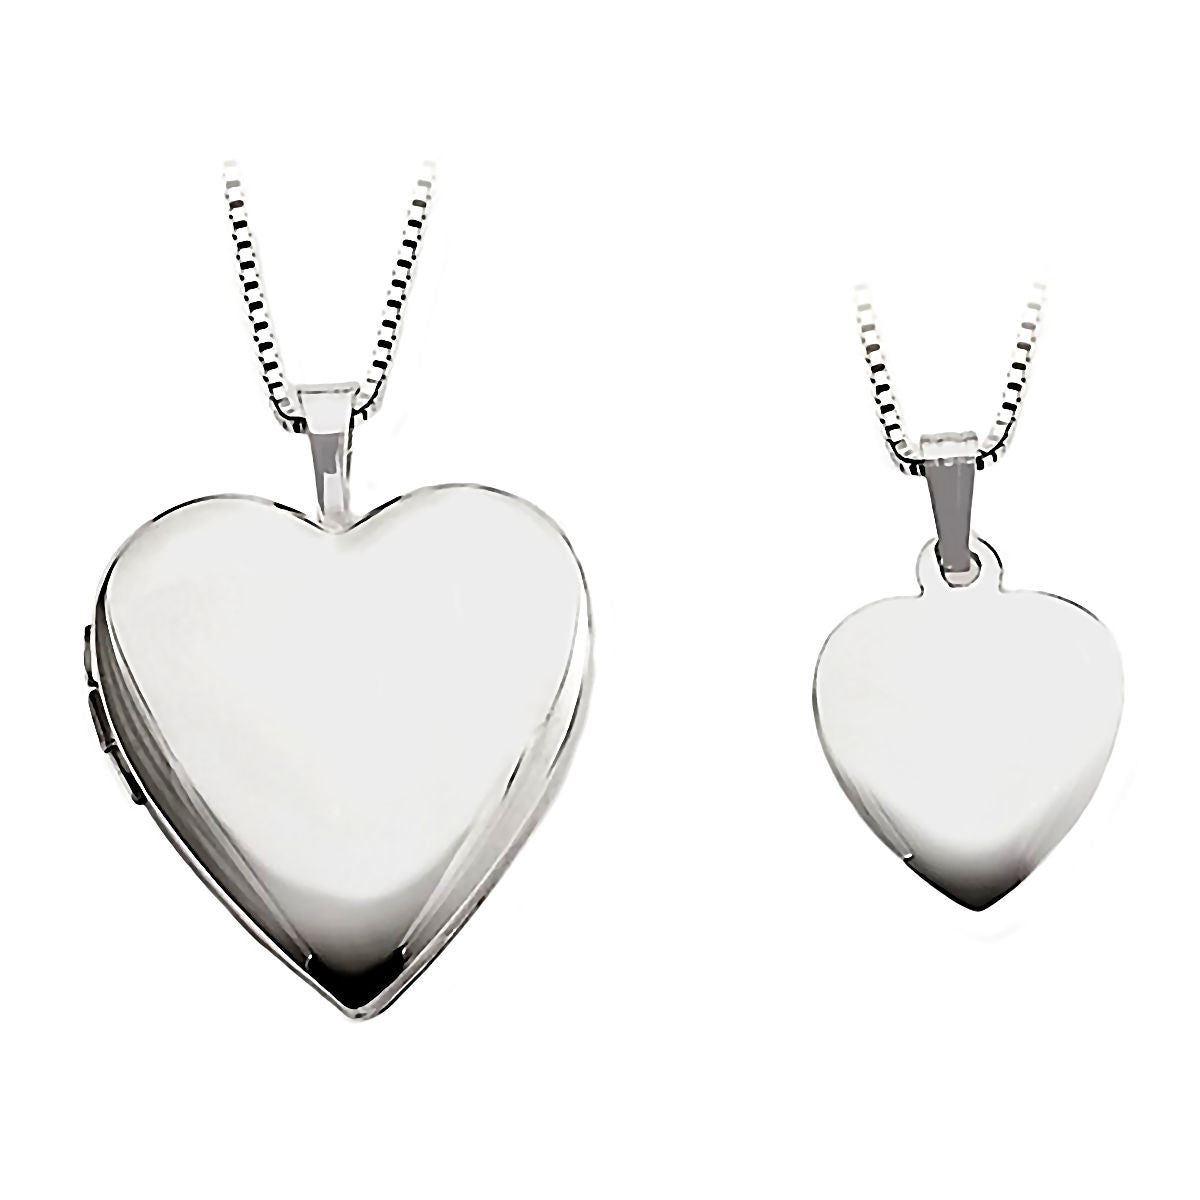 Sterling Silver 925 Plain Heart Locket Pendant 